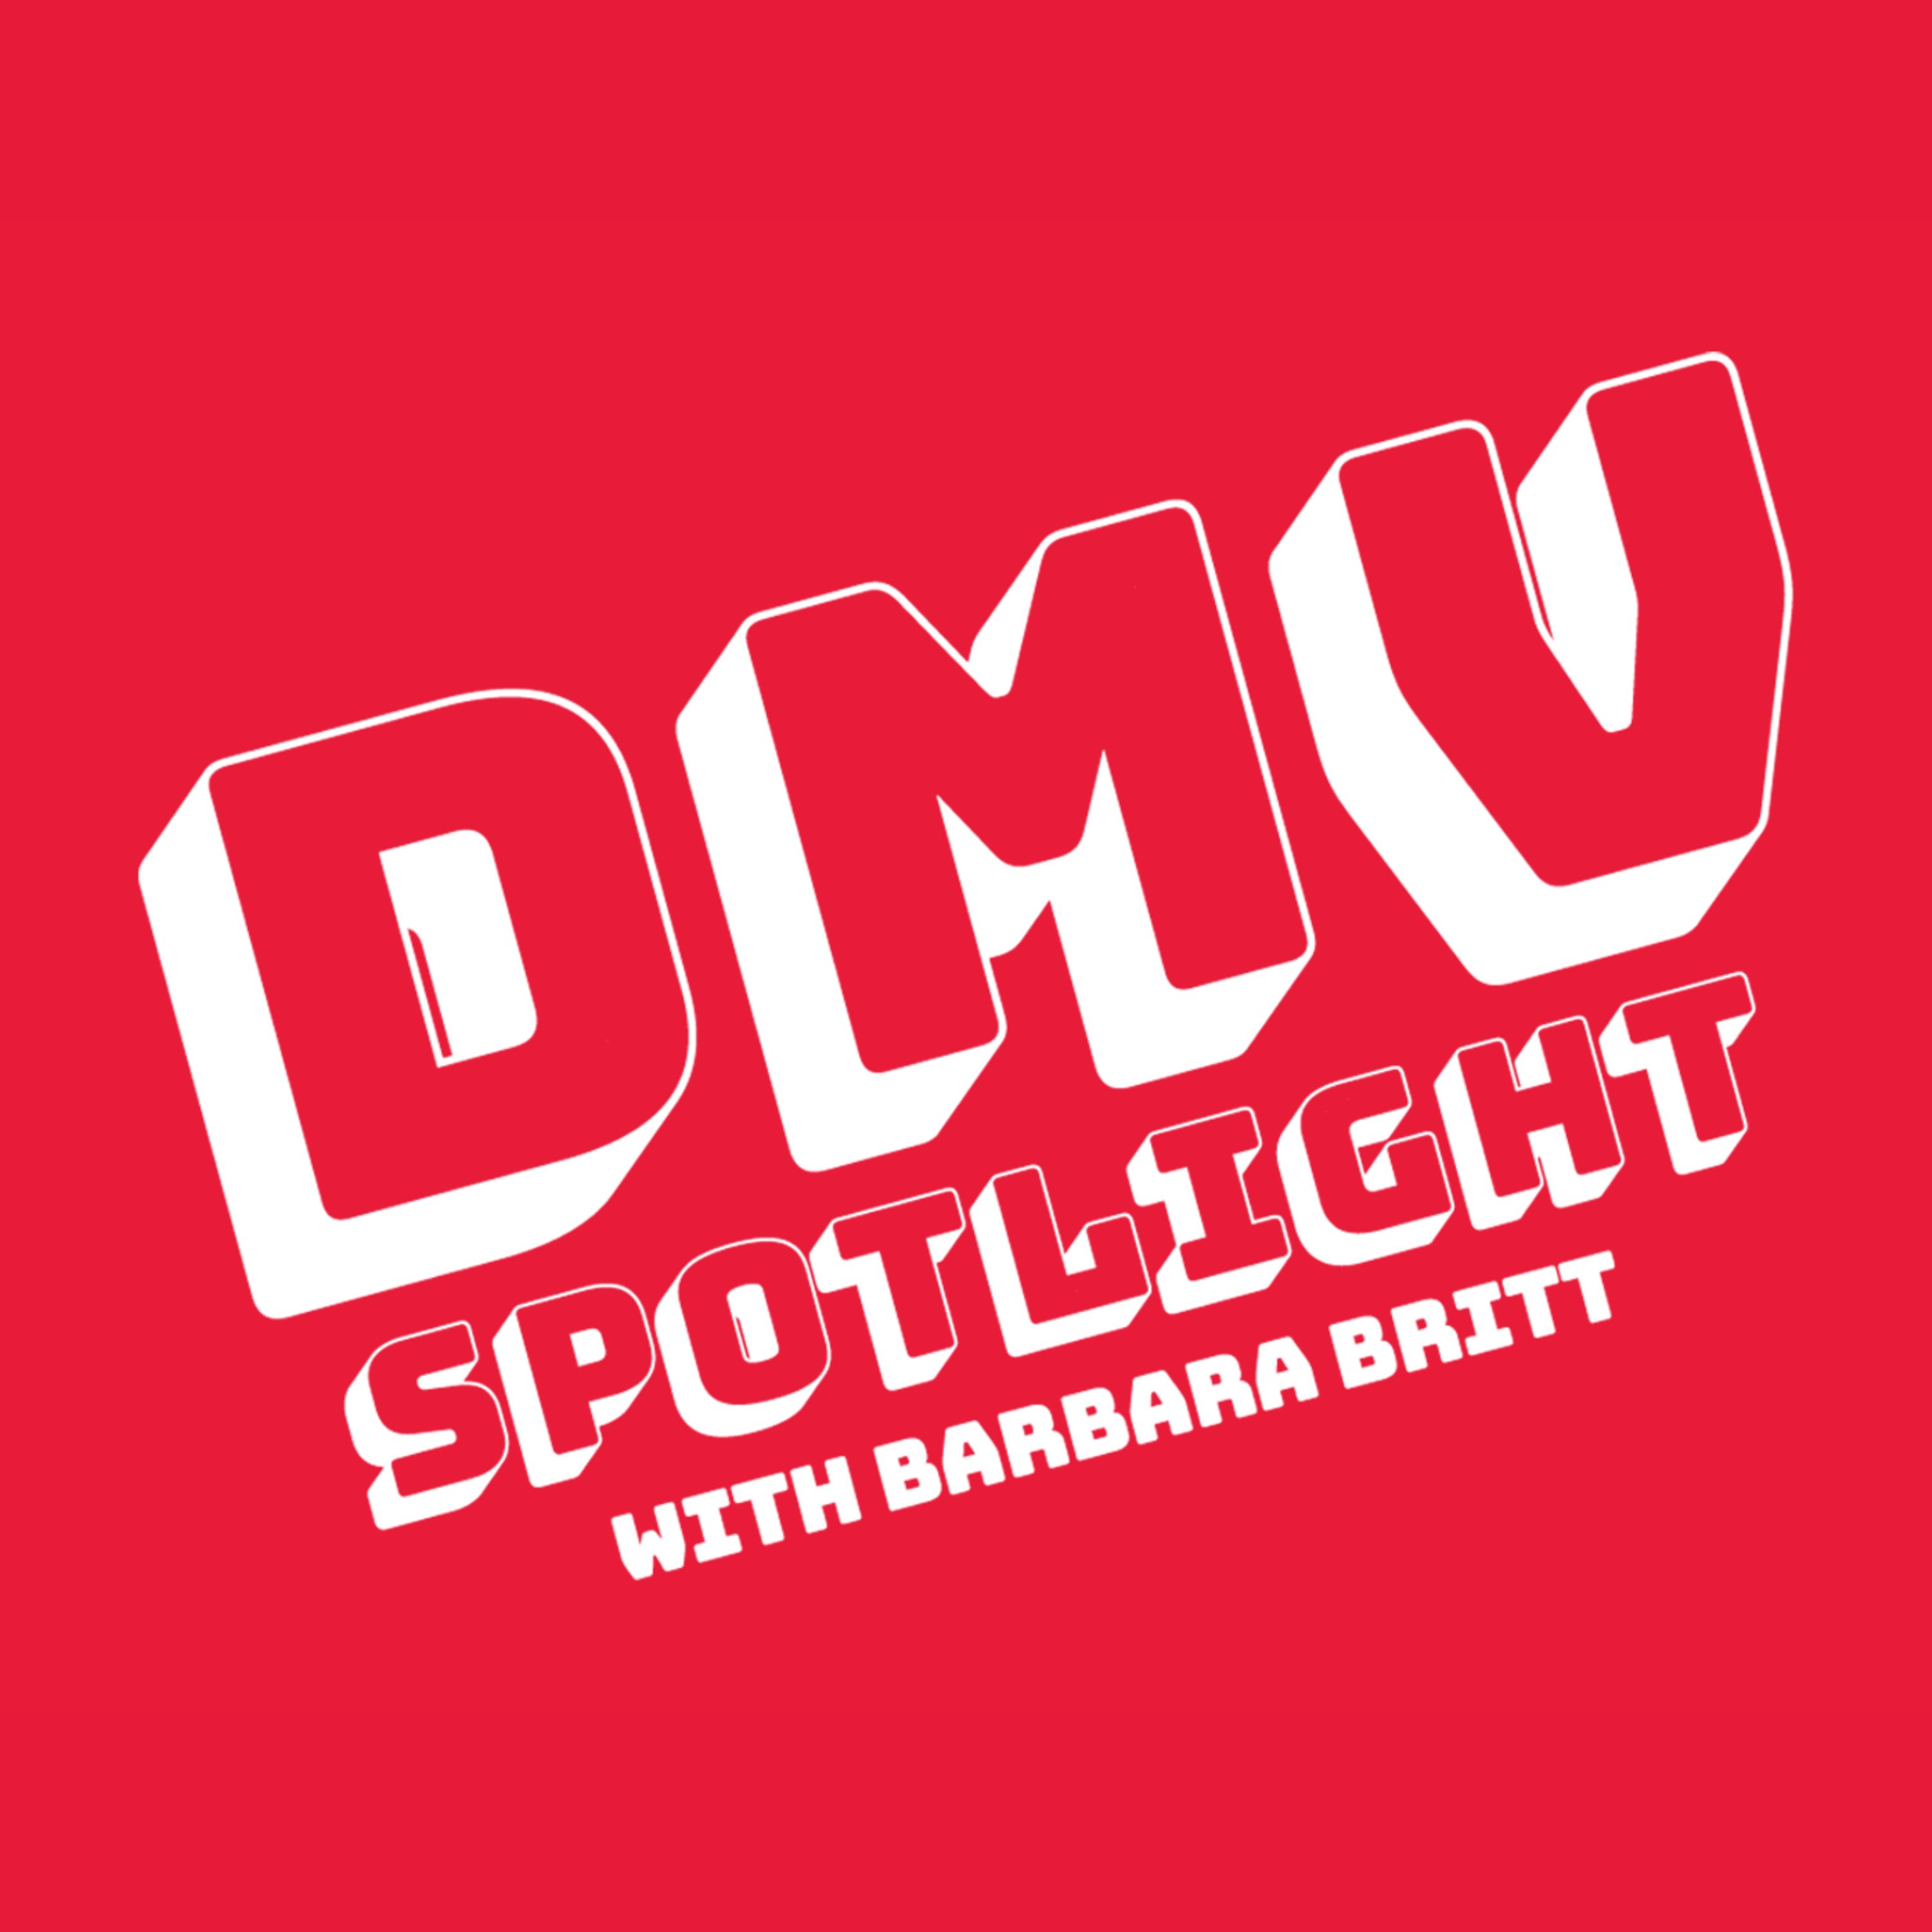 DMV Spotlight with Barbara Britt